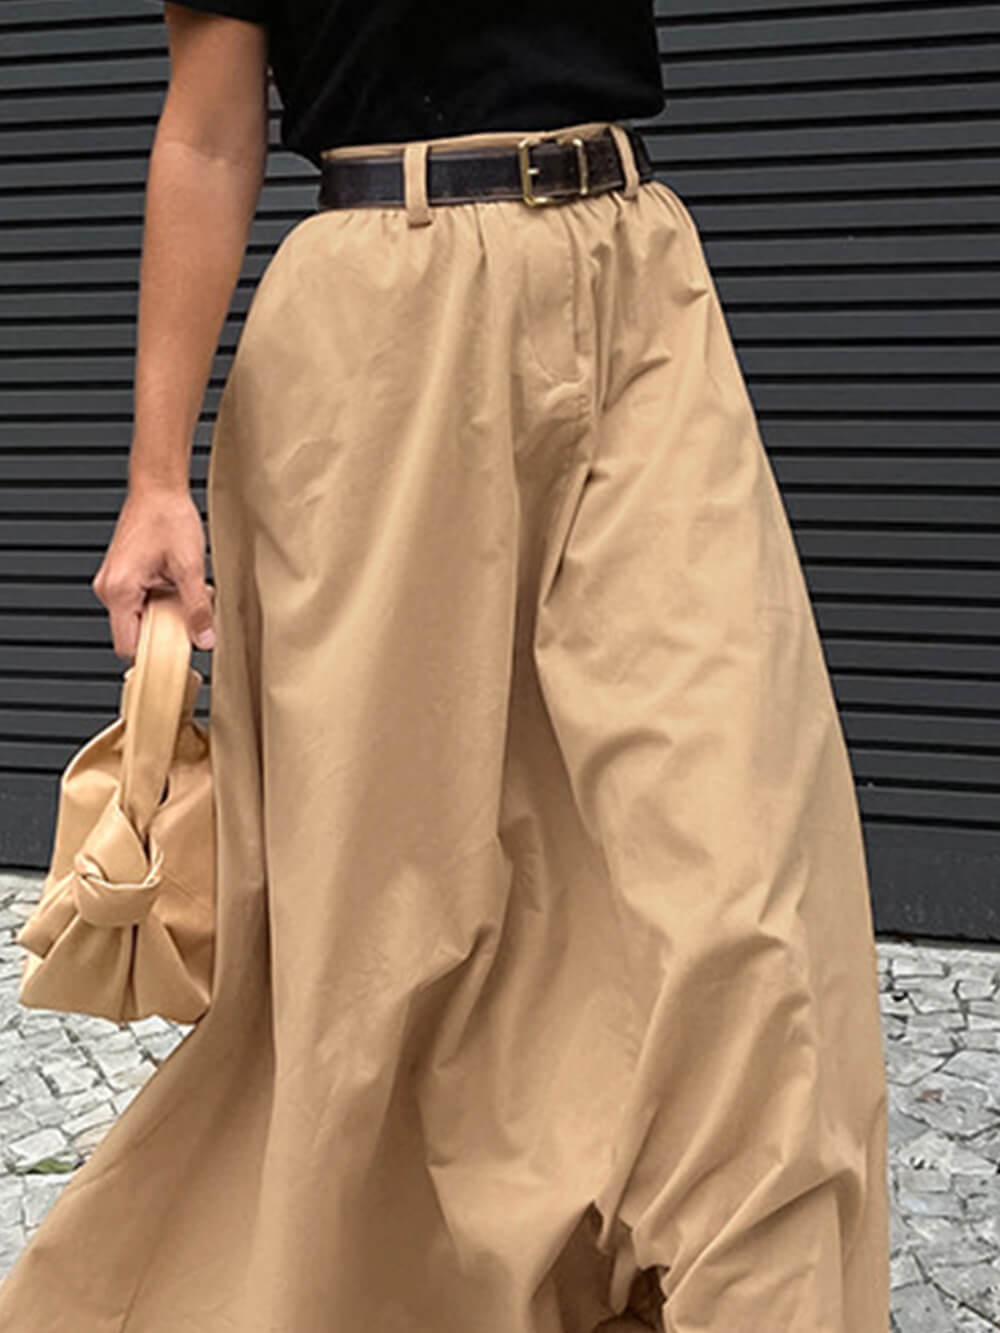 Falda larga suelta estilo callejero personalizada